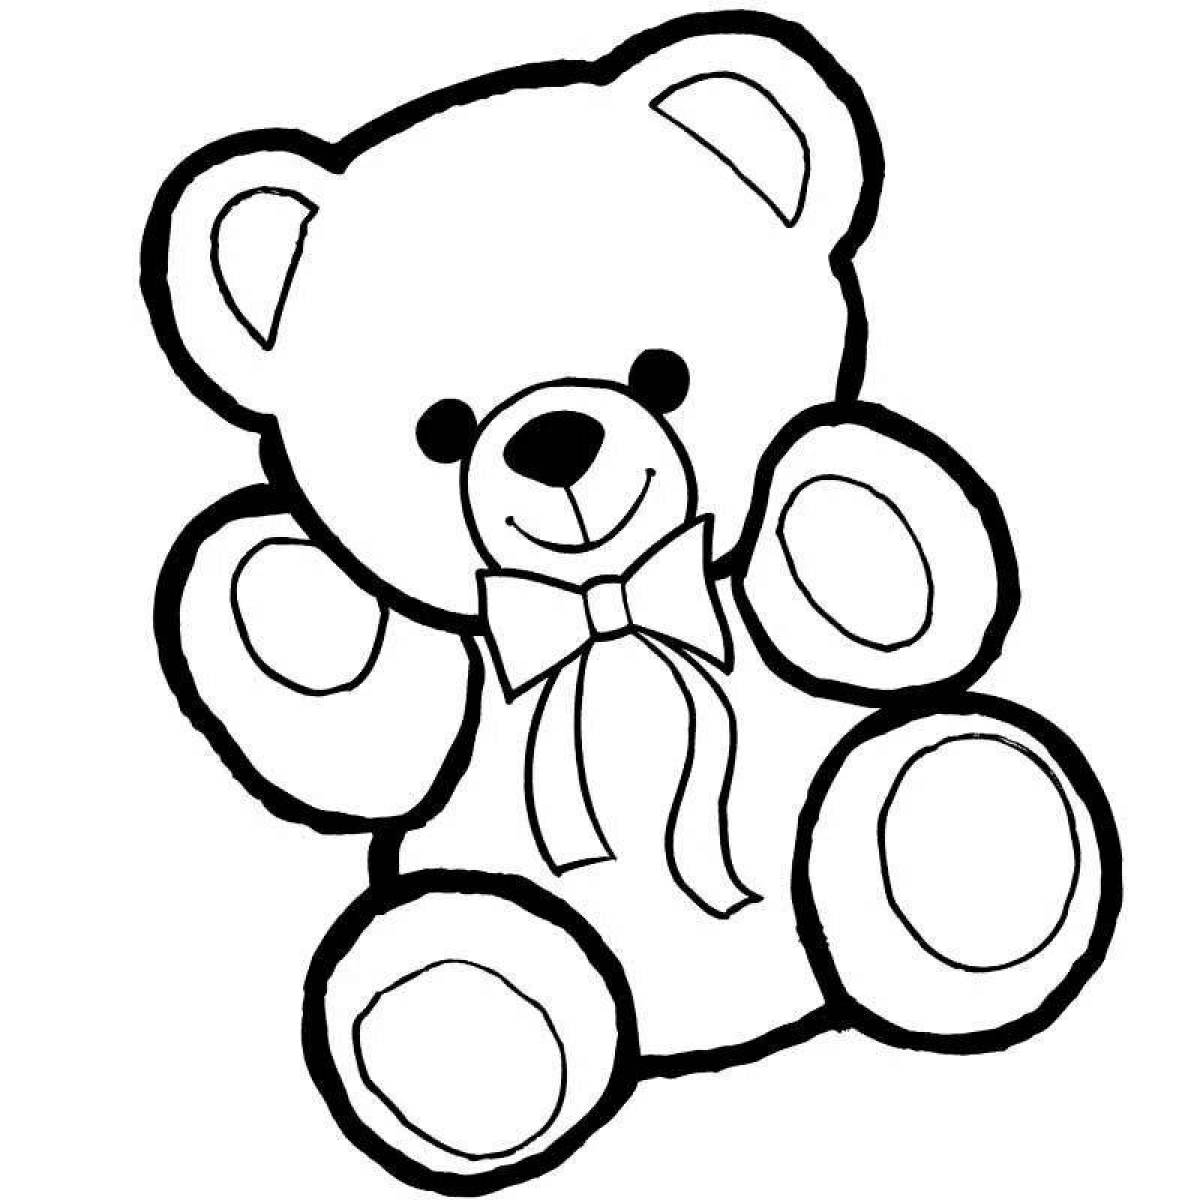 Coloring wavy teddy bear